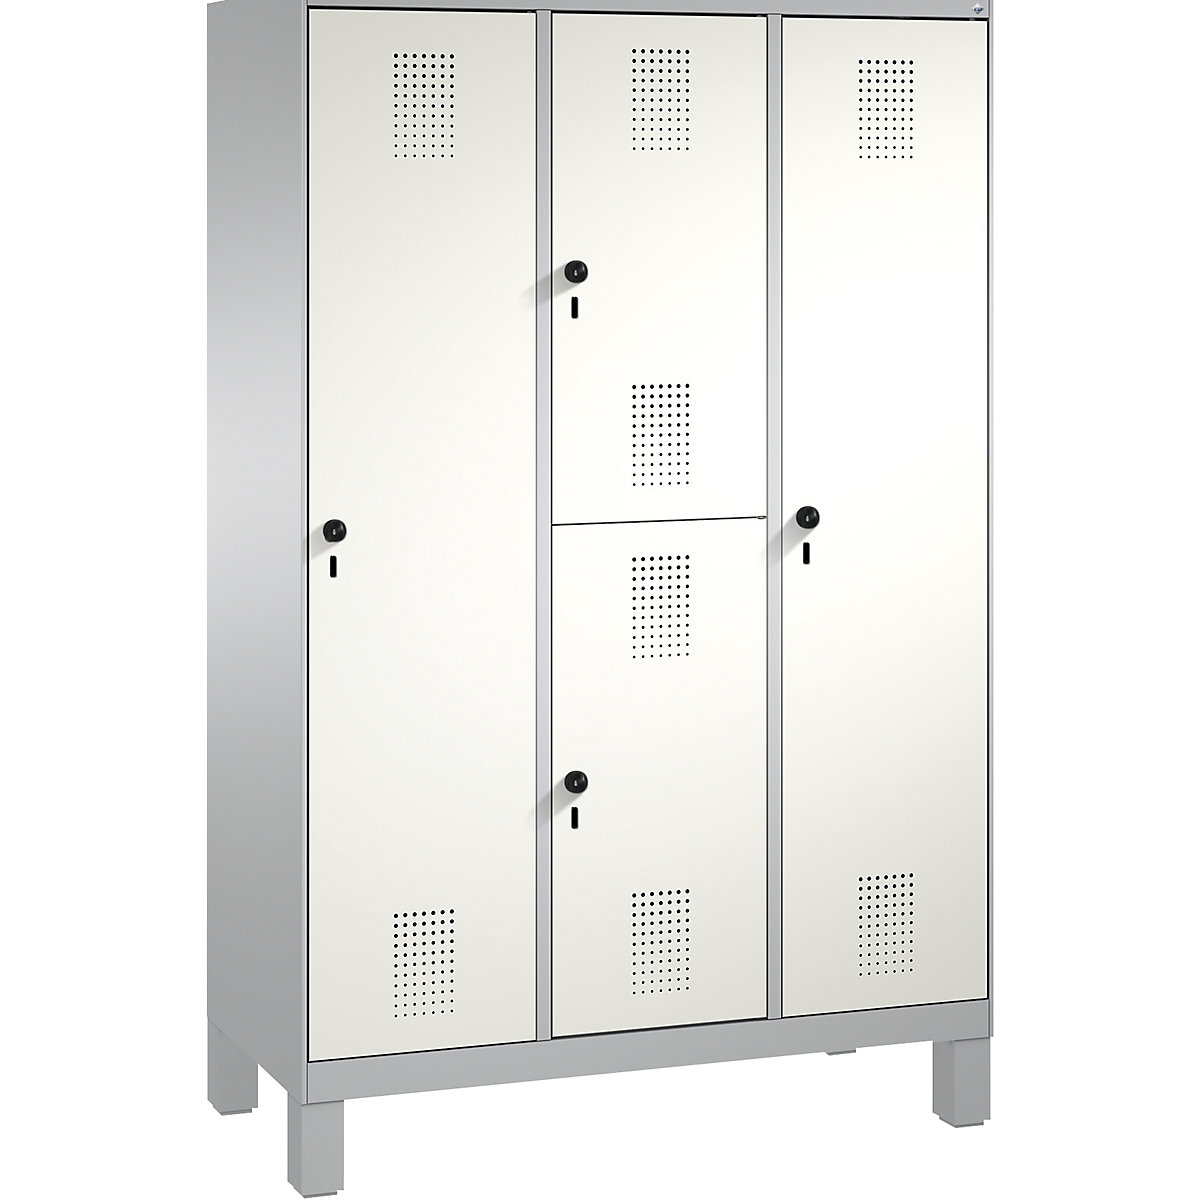 Kombinovaná skříň EVOLO, jednopatrová a dvoupatrová – C+P, 3 oddíly, 4 dveře, šířka oddílu 400 mm, s nohami, bílý hliník / bílý hliník-14